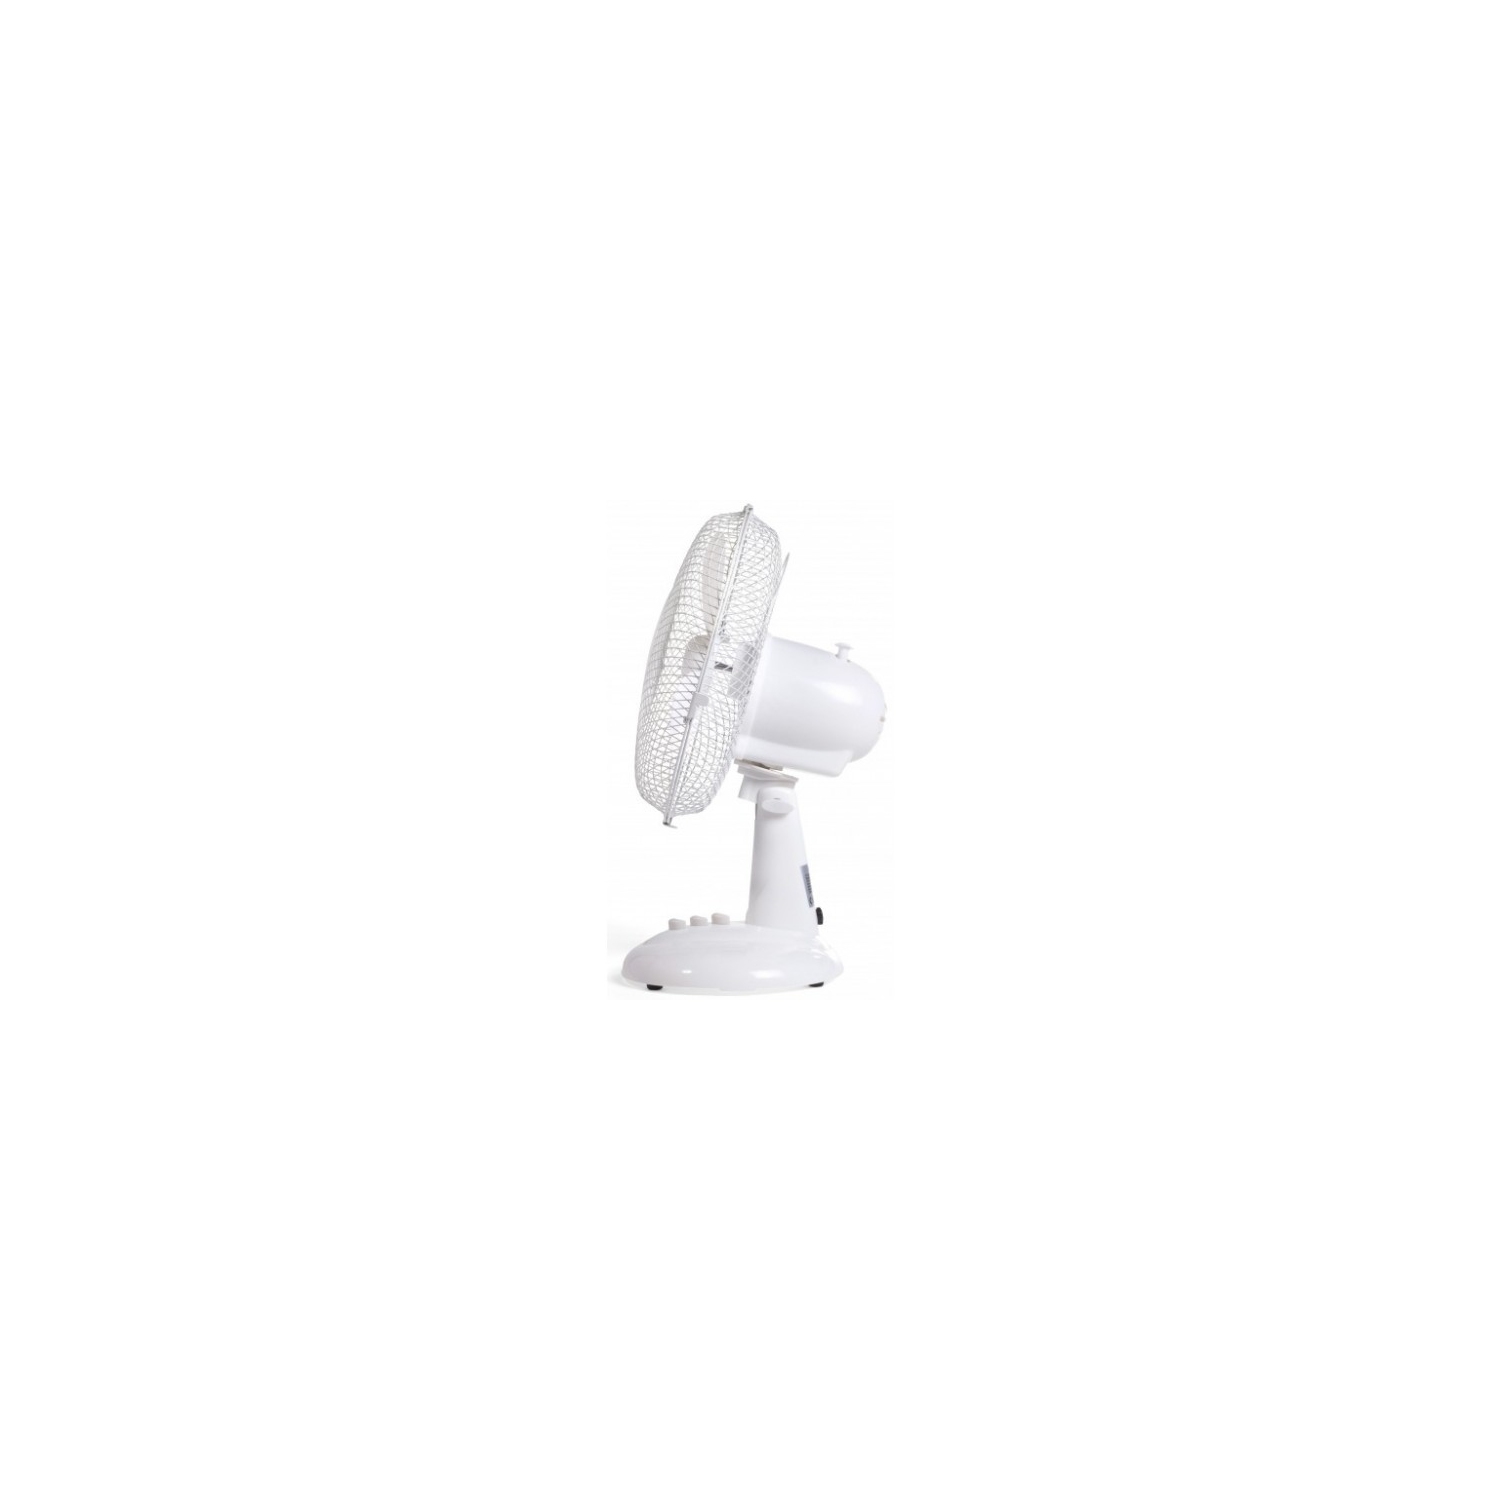 Igenix 9" Desk Fan (white) - 2